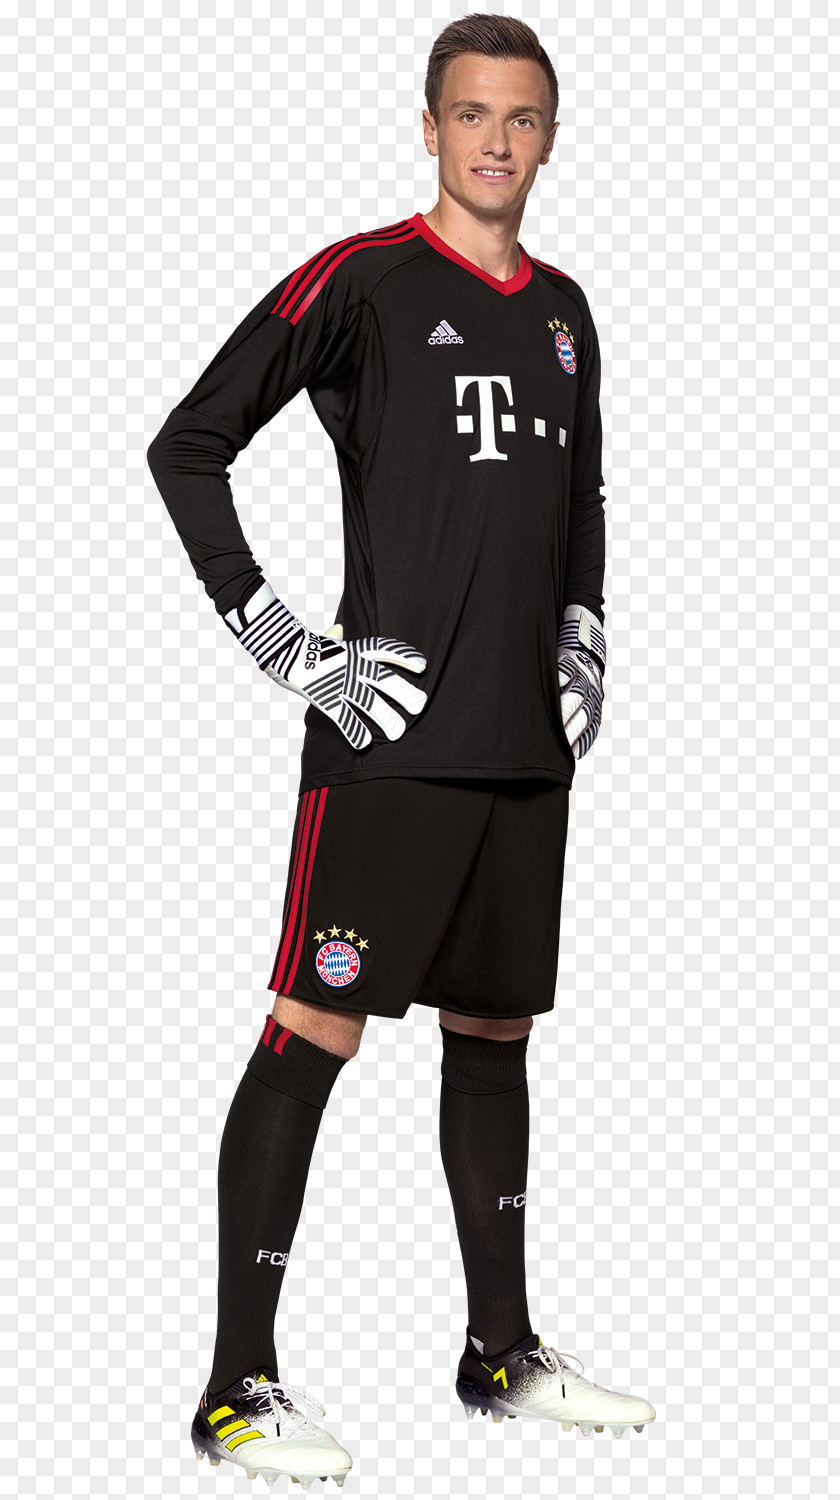 Manuel Neuer Christian Früchtl FC Bayern Munich Football Player Sven Ulreich PNG